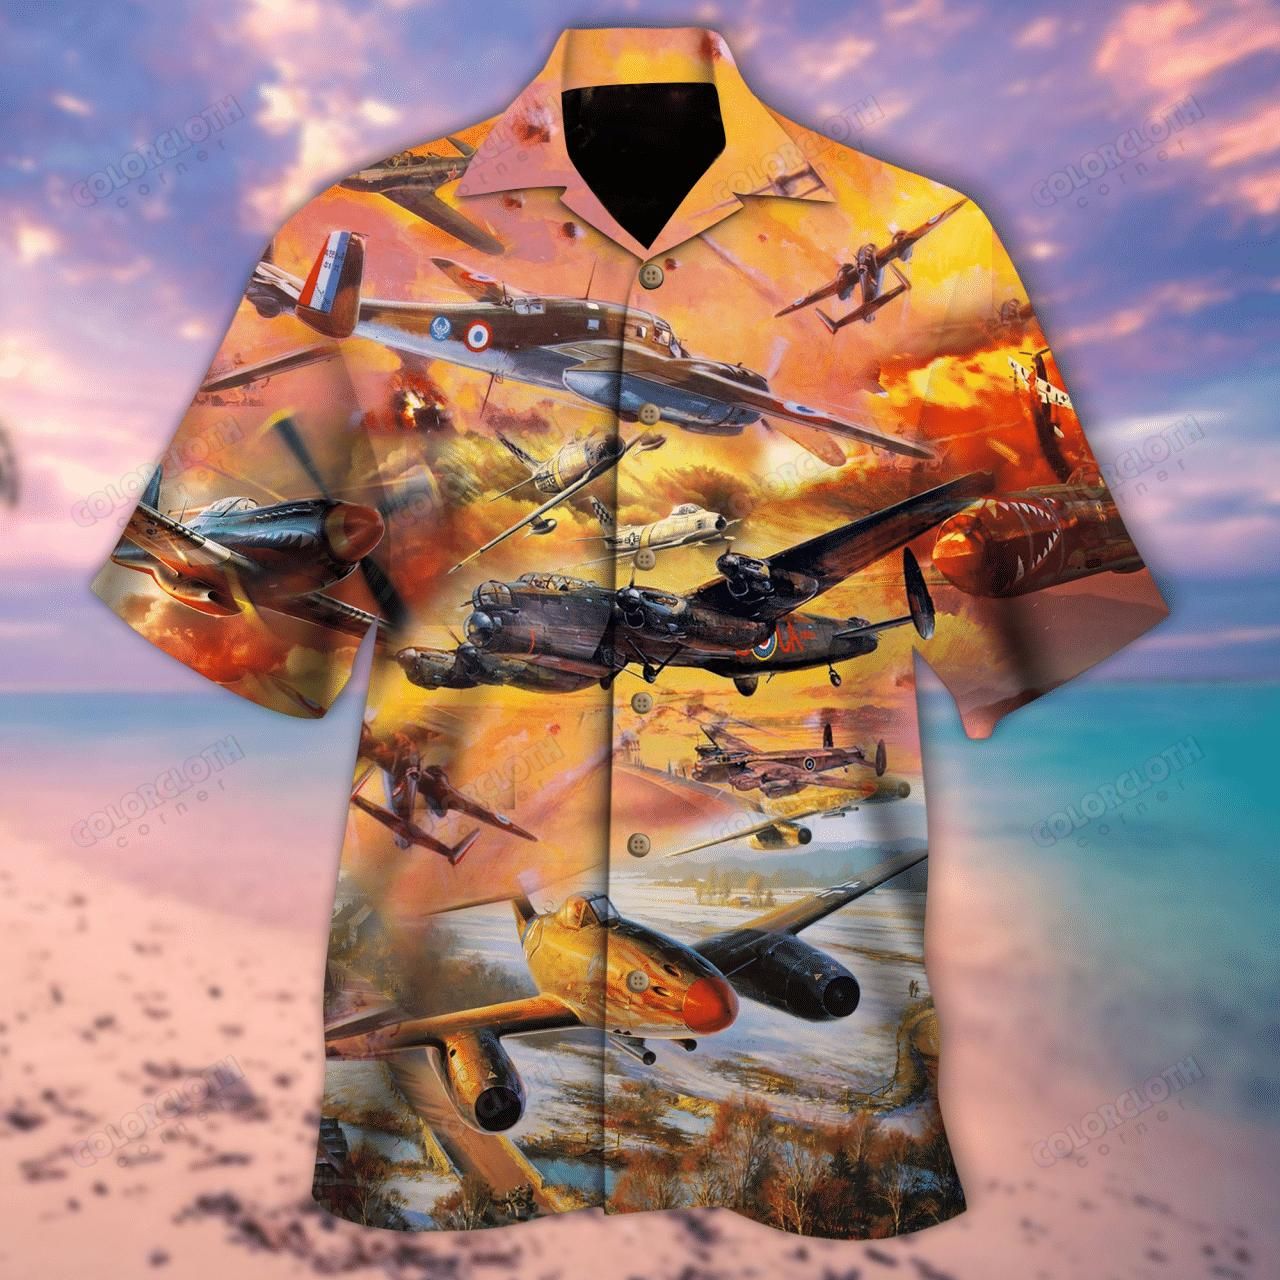 Flying Isn'T Dangerous Crashing Is What'S Dangerous Aloha Hawaiian Shirt Colorful Short Sleeve Summer Beach Casual Shirt For Men And Women